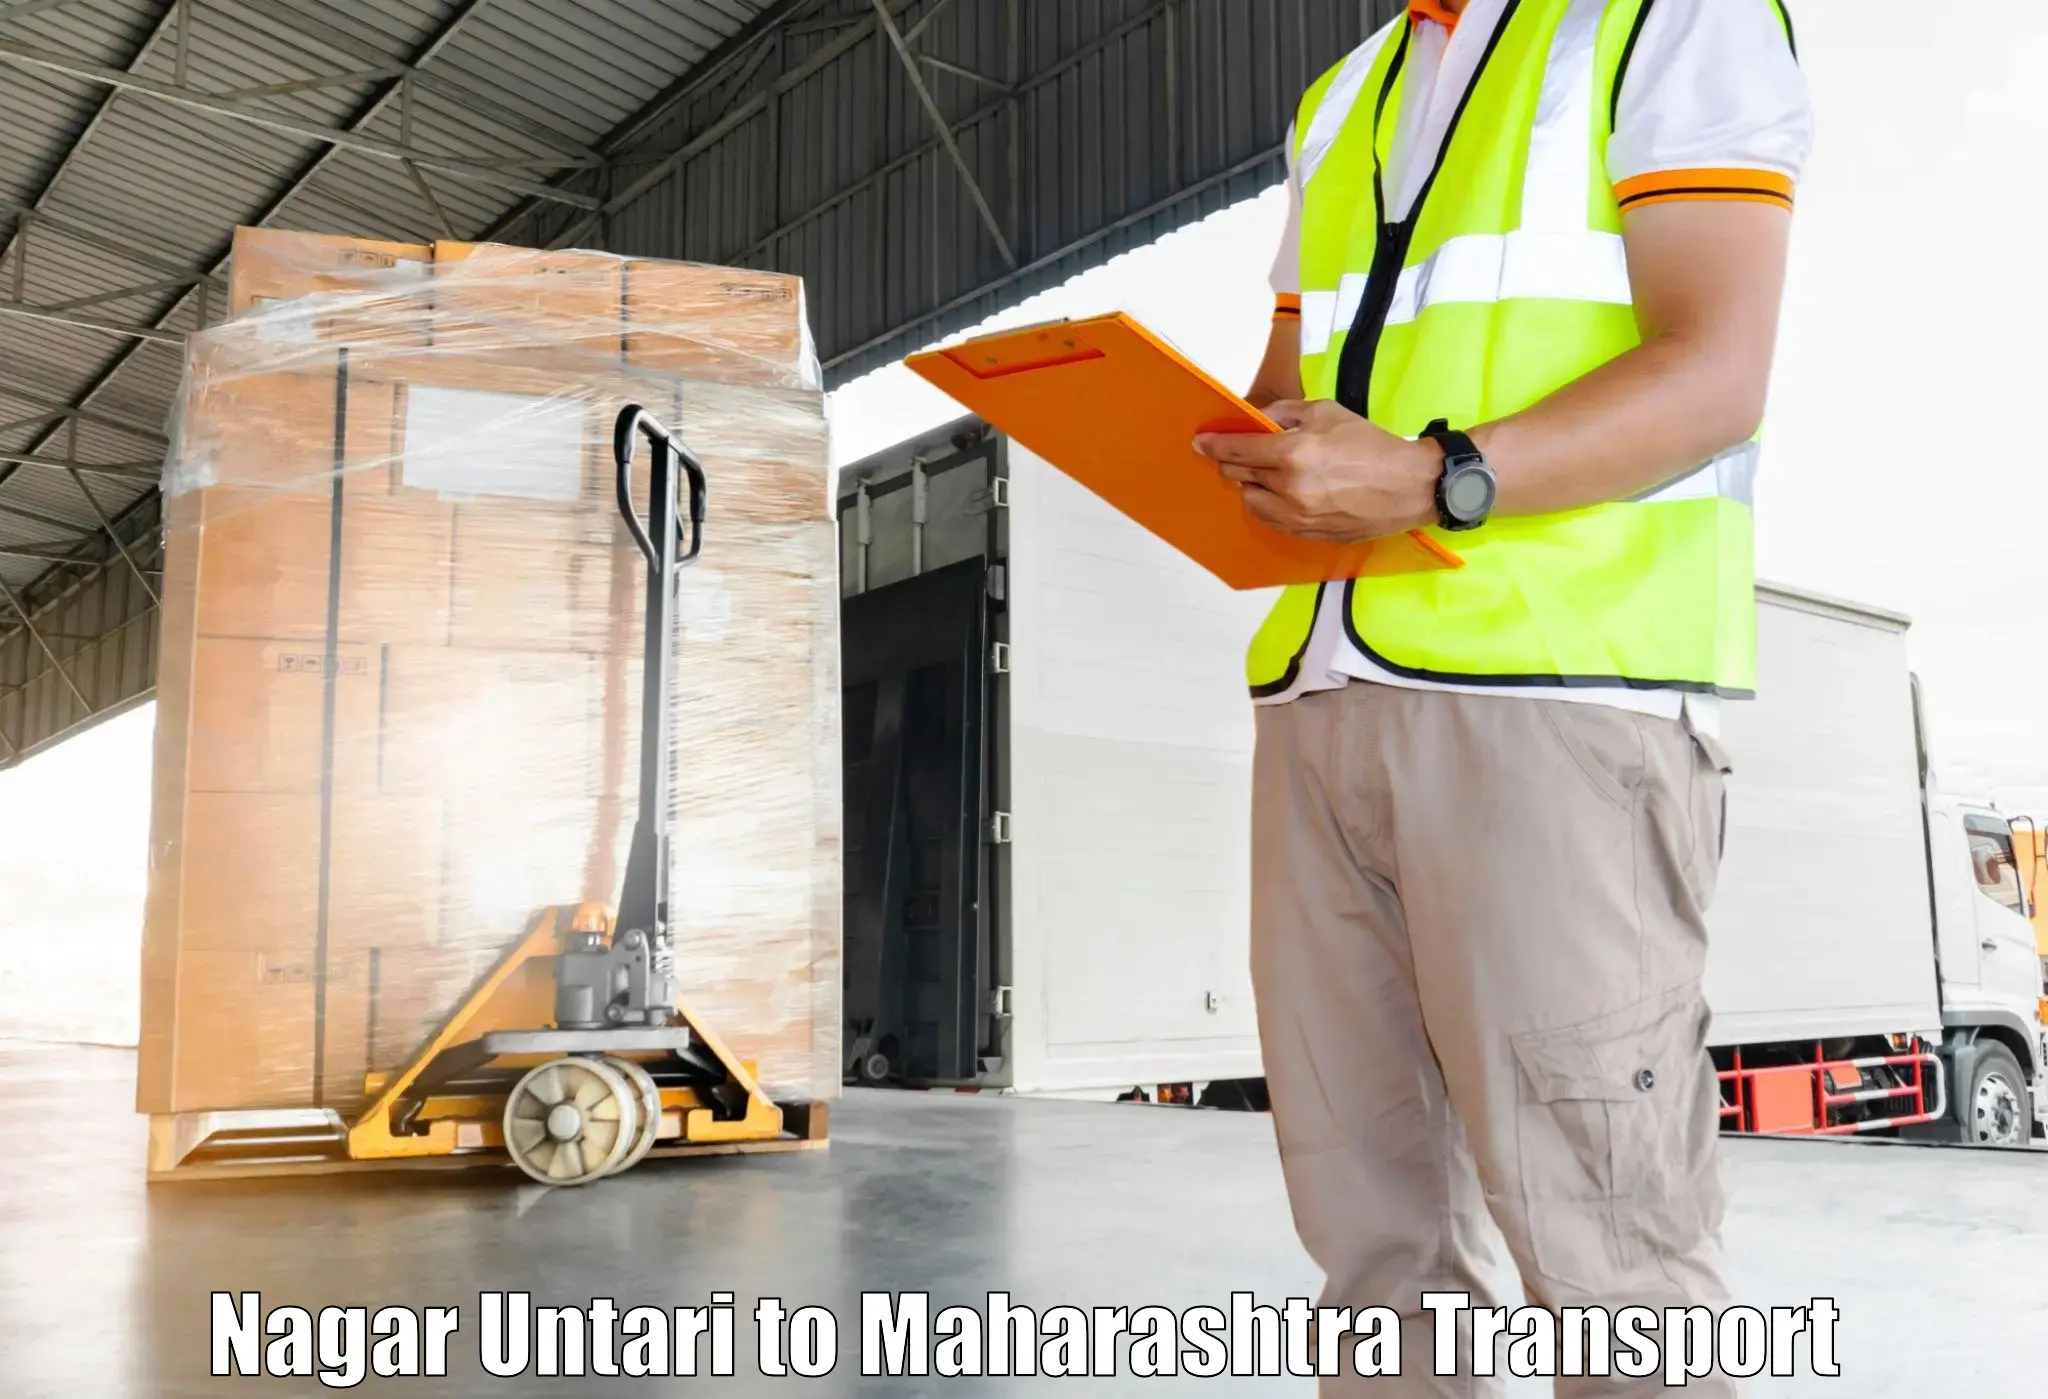 Shipping services Nagar Untari to Maharashtra